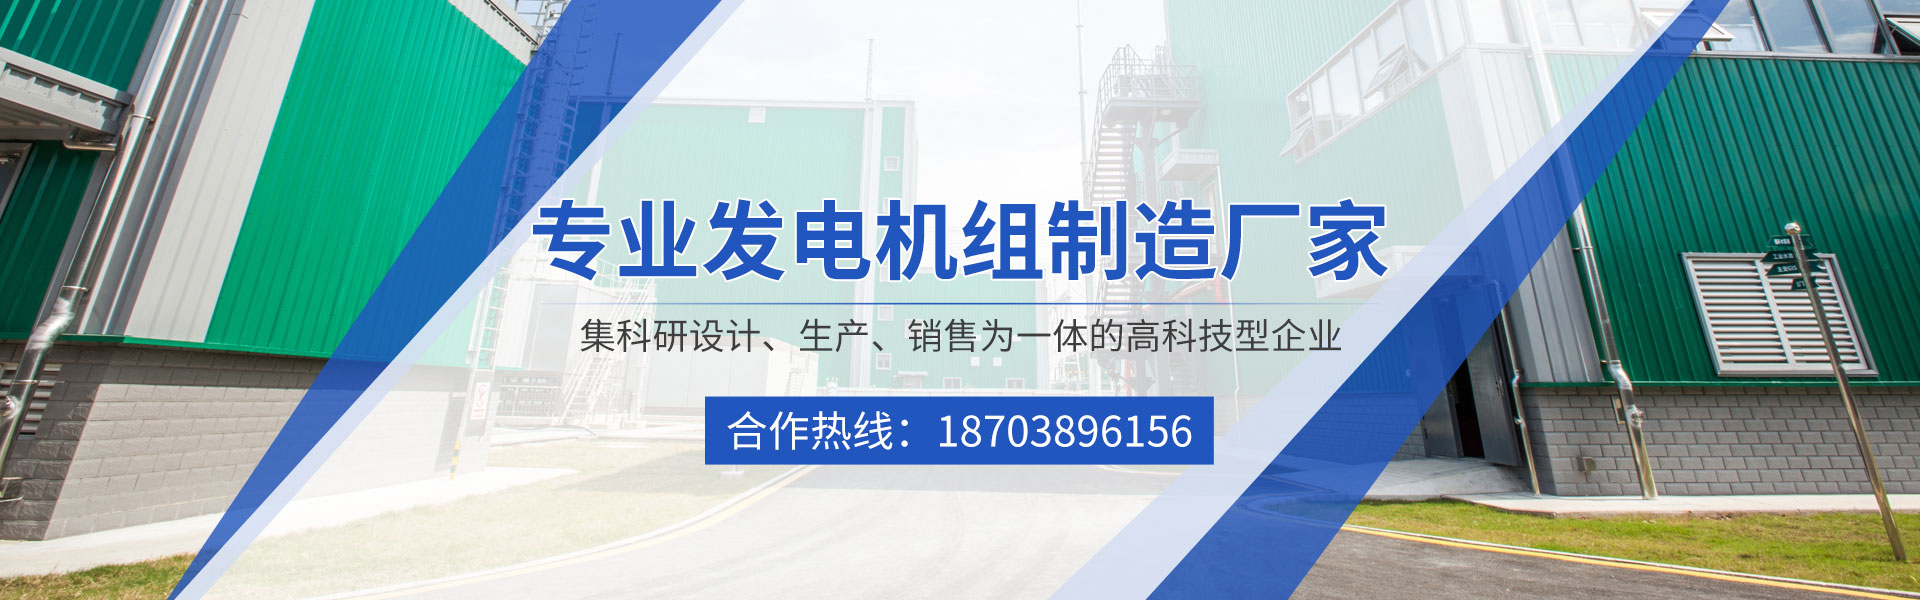 河南省歐瑪機電設備有限公司